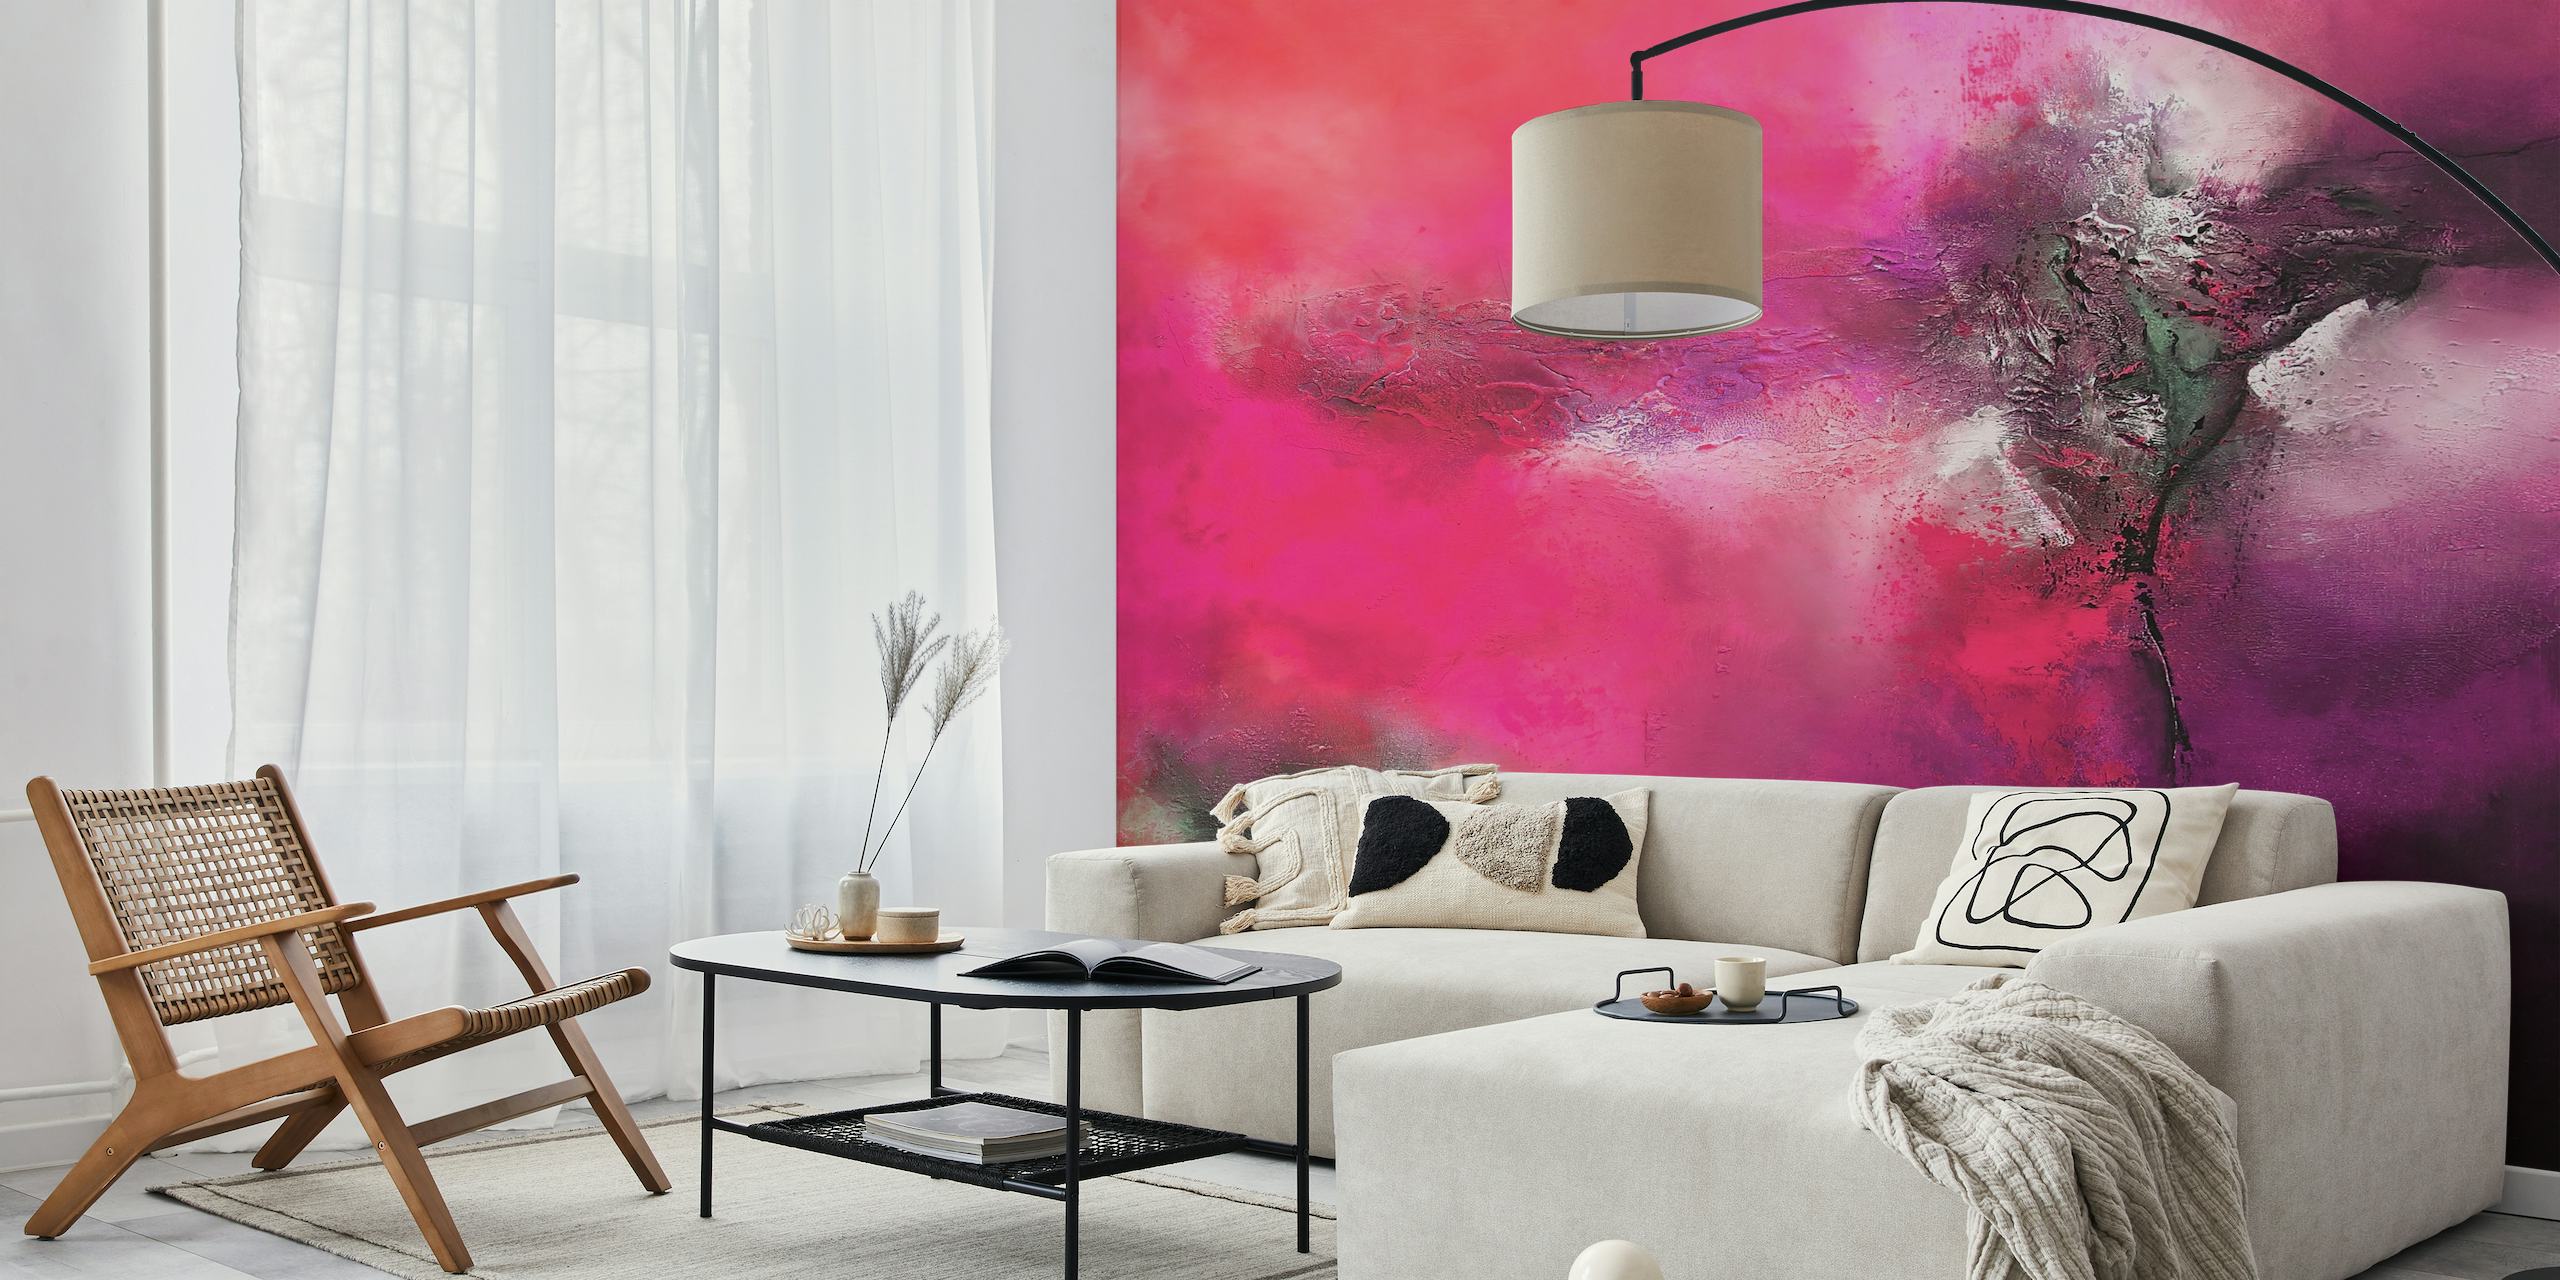 Abstraktes Wandbild mit leuchtenden Rosa- und Grautönen, das an ausdrucksstarke Kunst erinnert